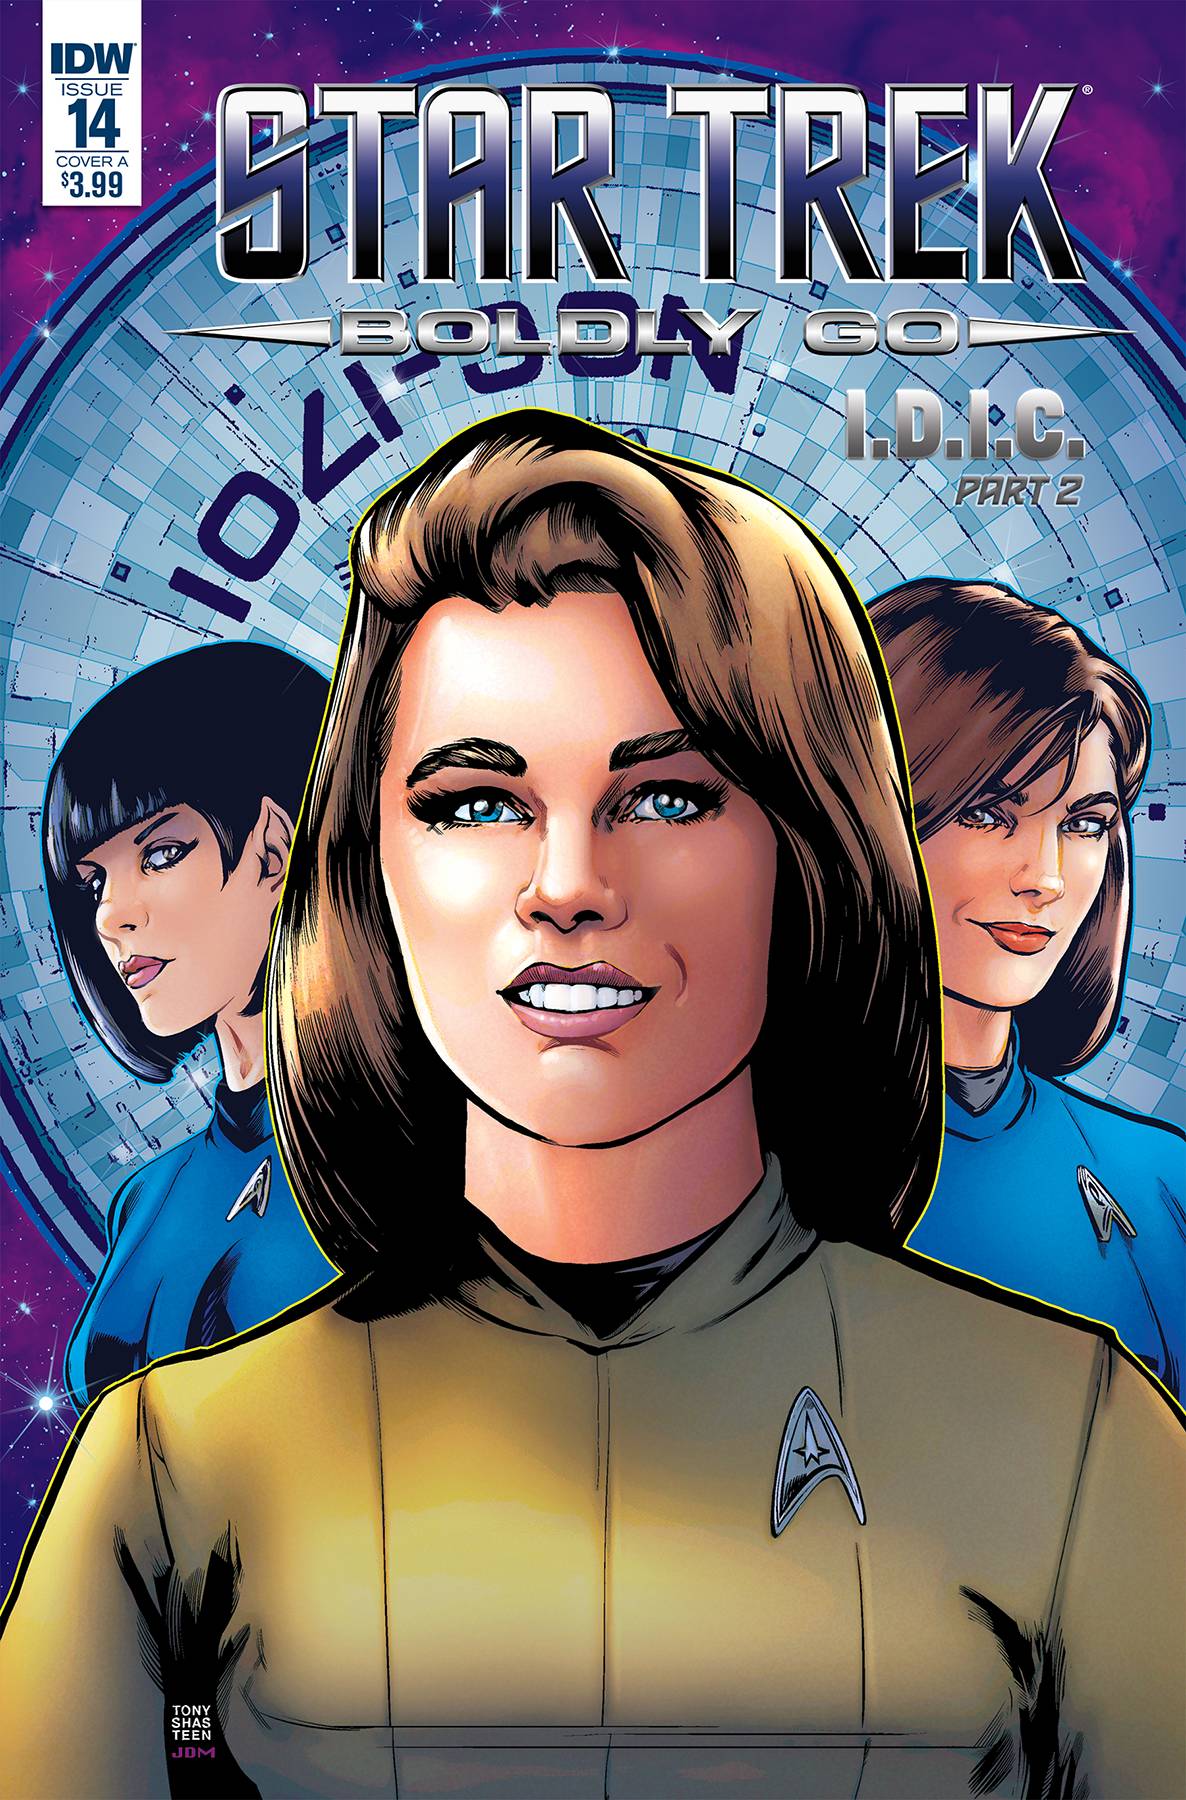 Star Trek Boldly Go #14 Cover A Shasteen